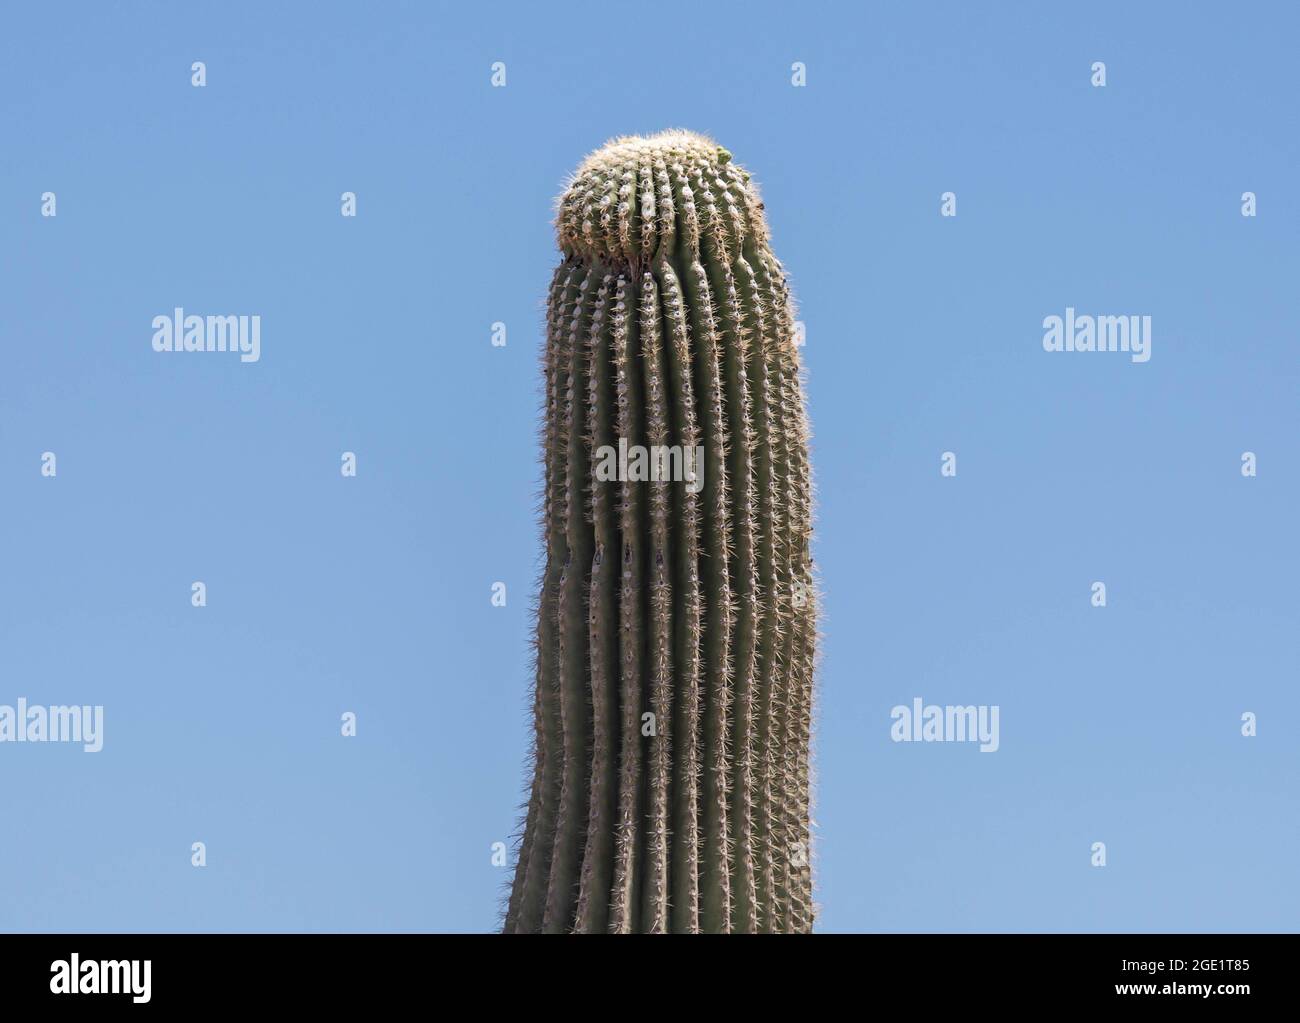 Cactus saguaro (Carnegiea gigantea, Cereus giganteus), blooming, USA, Arizona Sonora, Banque D'Images